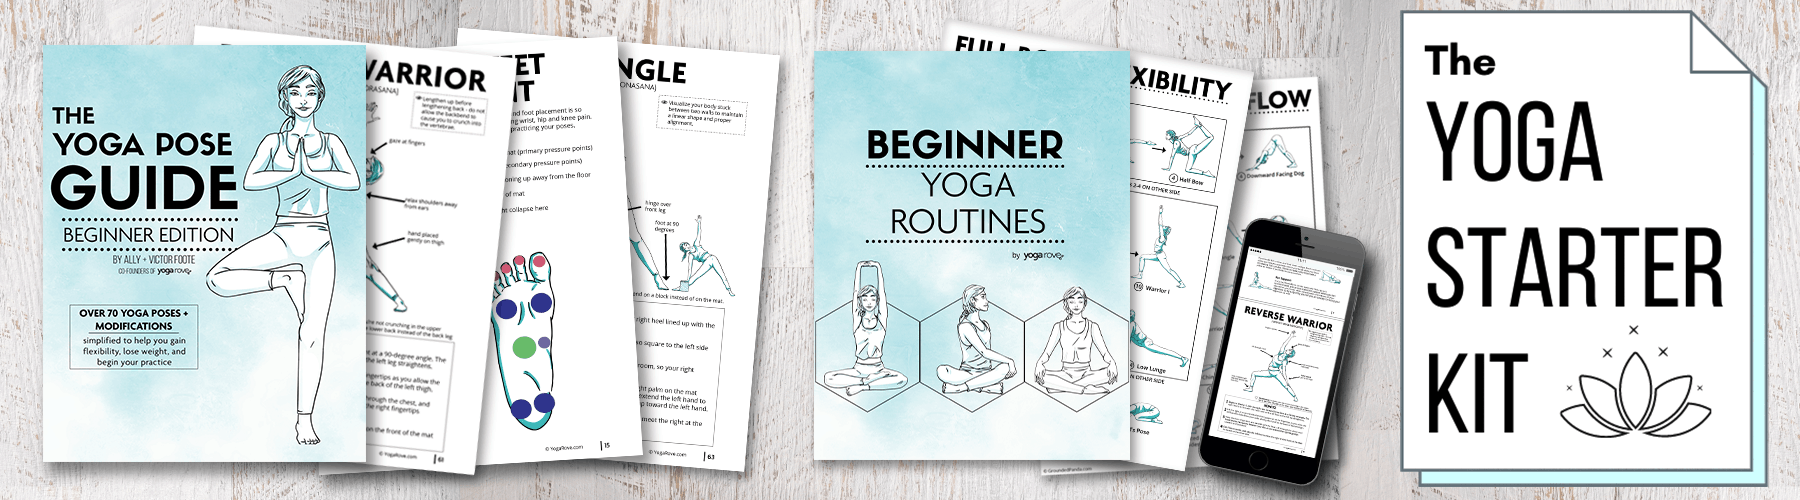 Yoga Starter Kit: Start Your Yoga Practice Right!